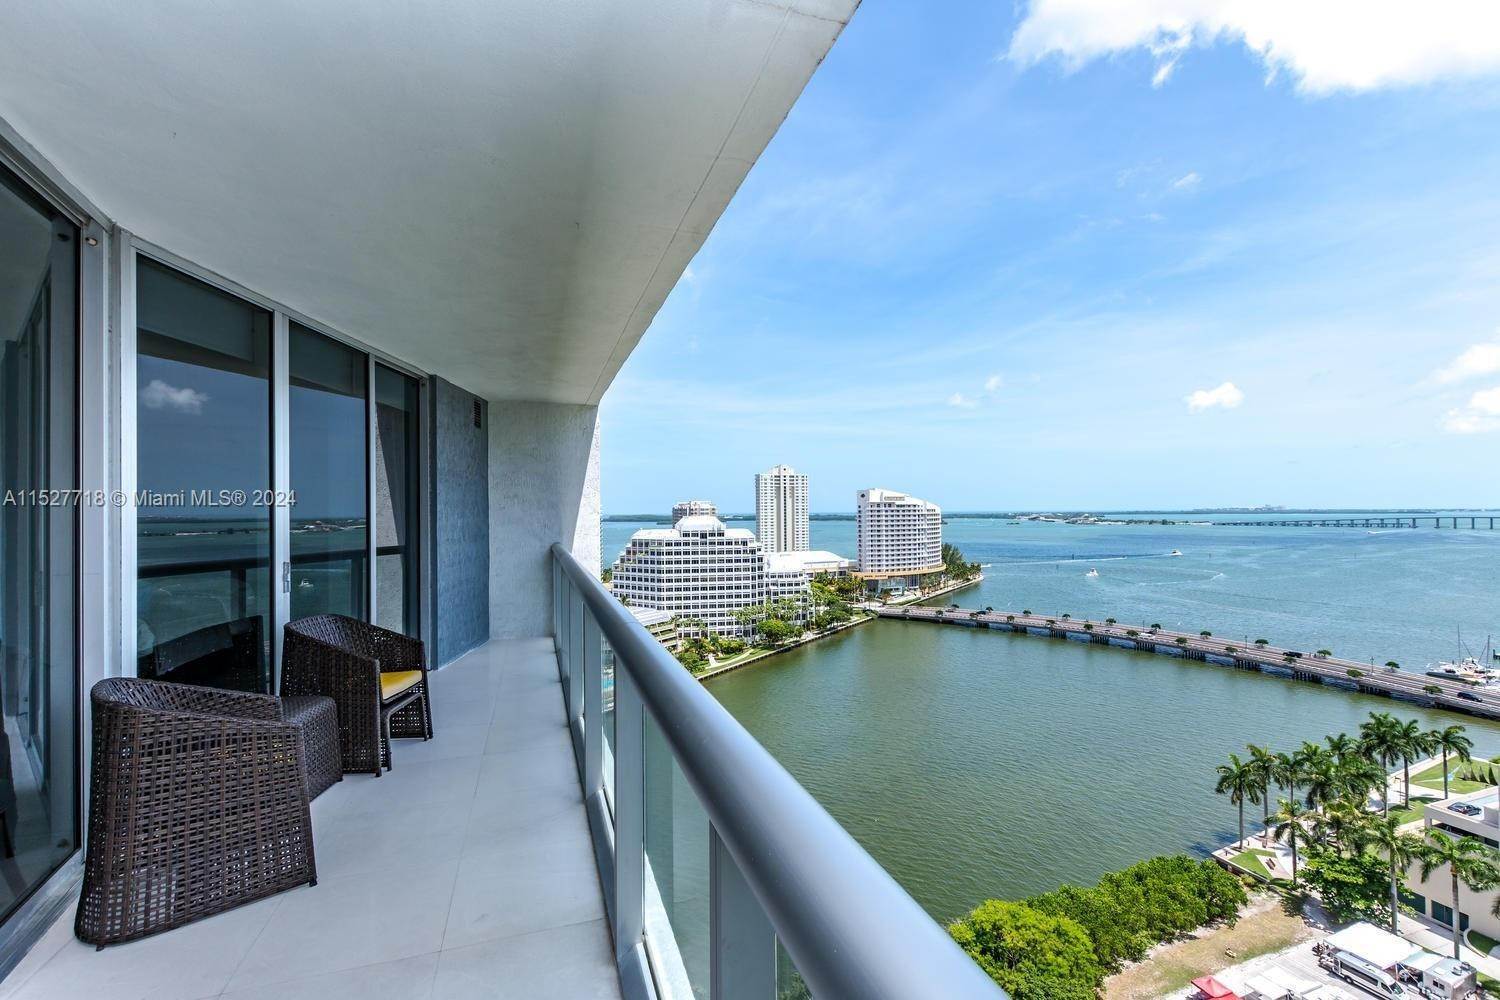 Condominium at Brickell, Miami, FL 33131